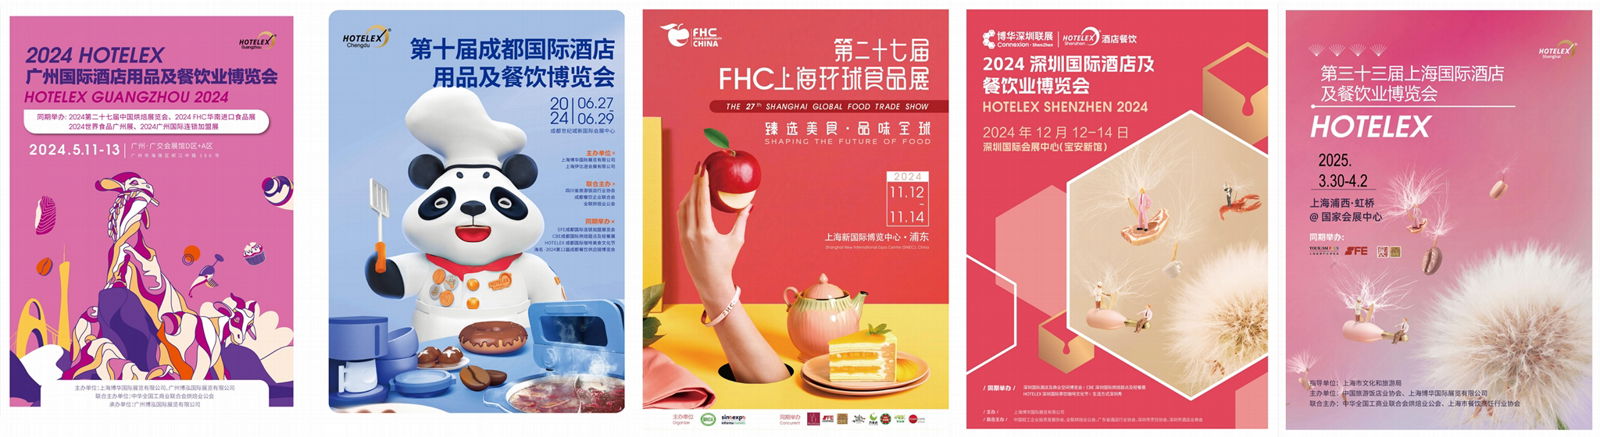 2025第三十三屆上海國際酒店及餐飲業博覽會HOTELEX(官方發布） 2